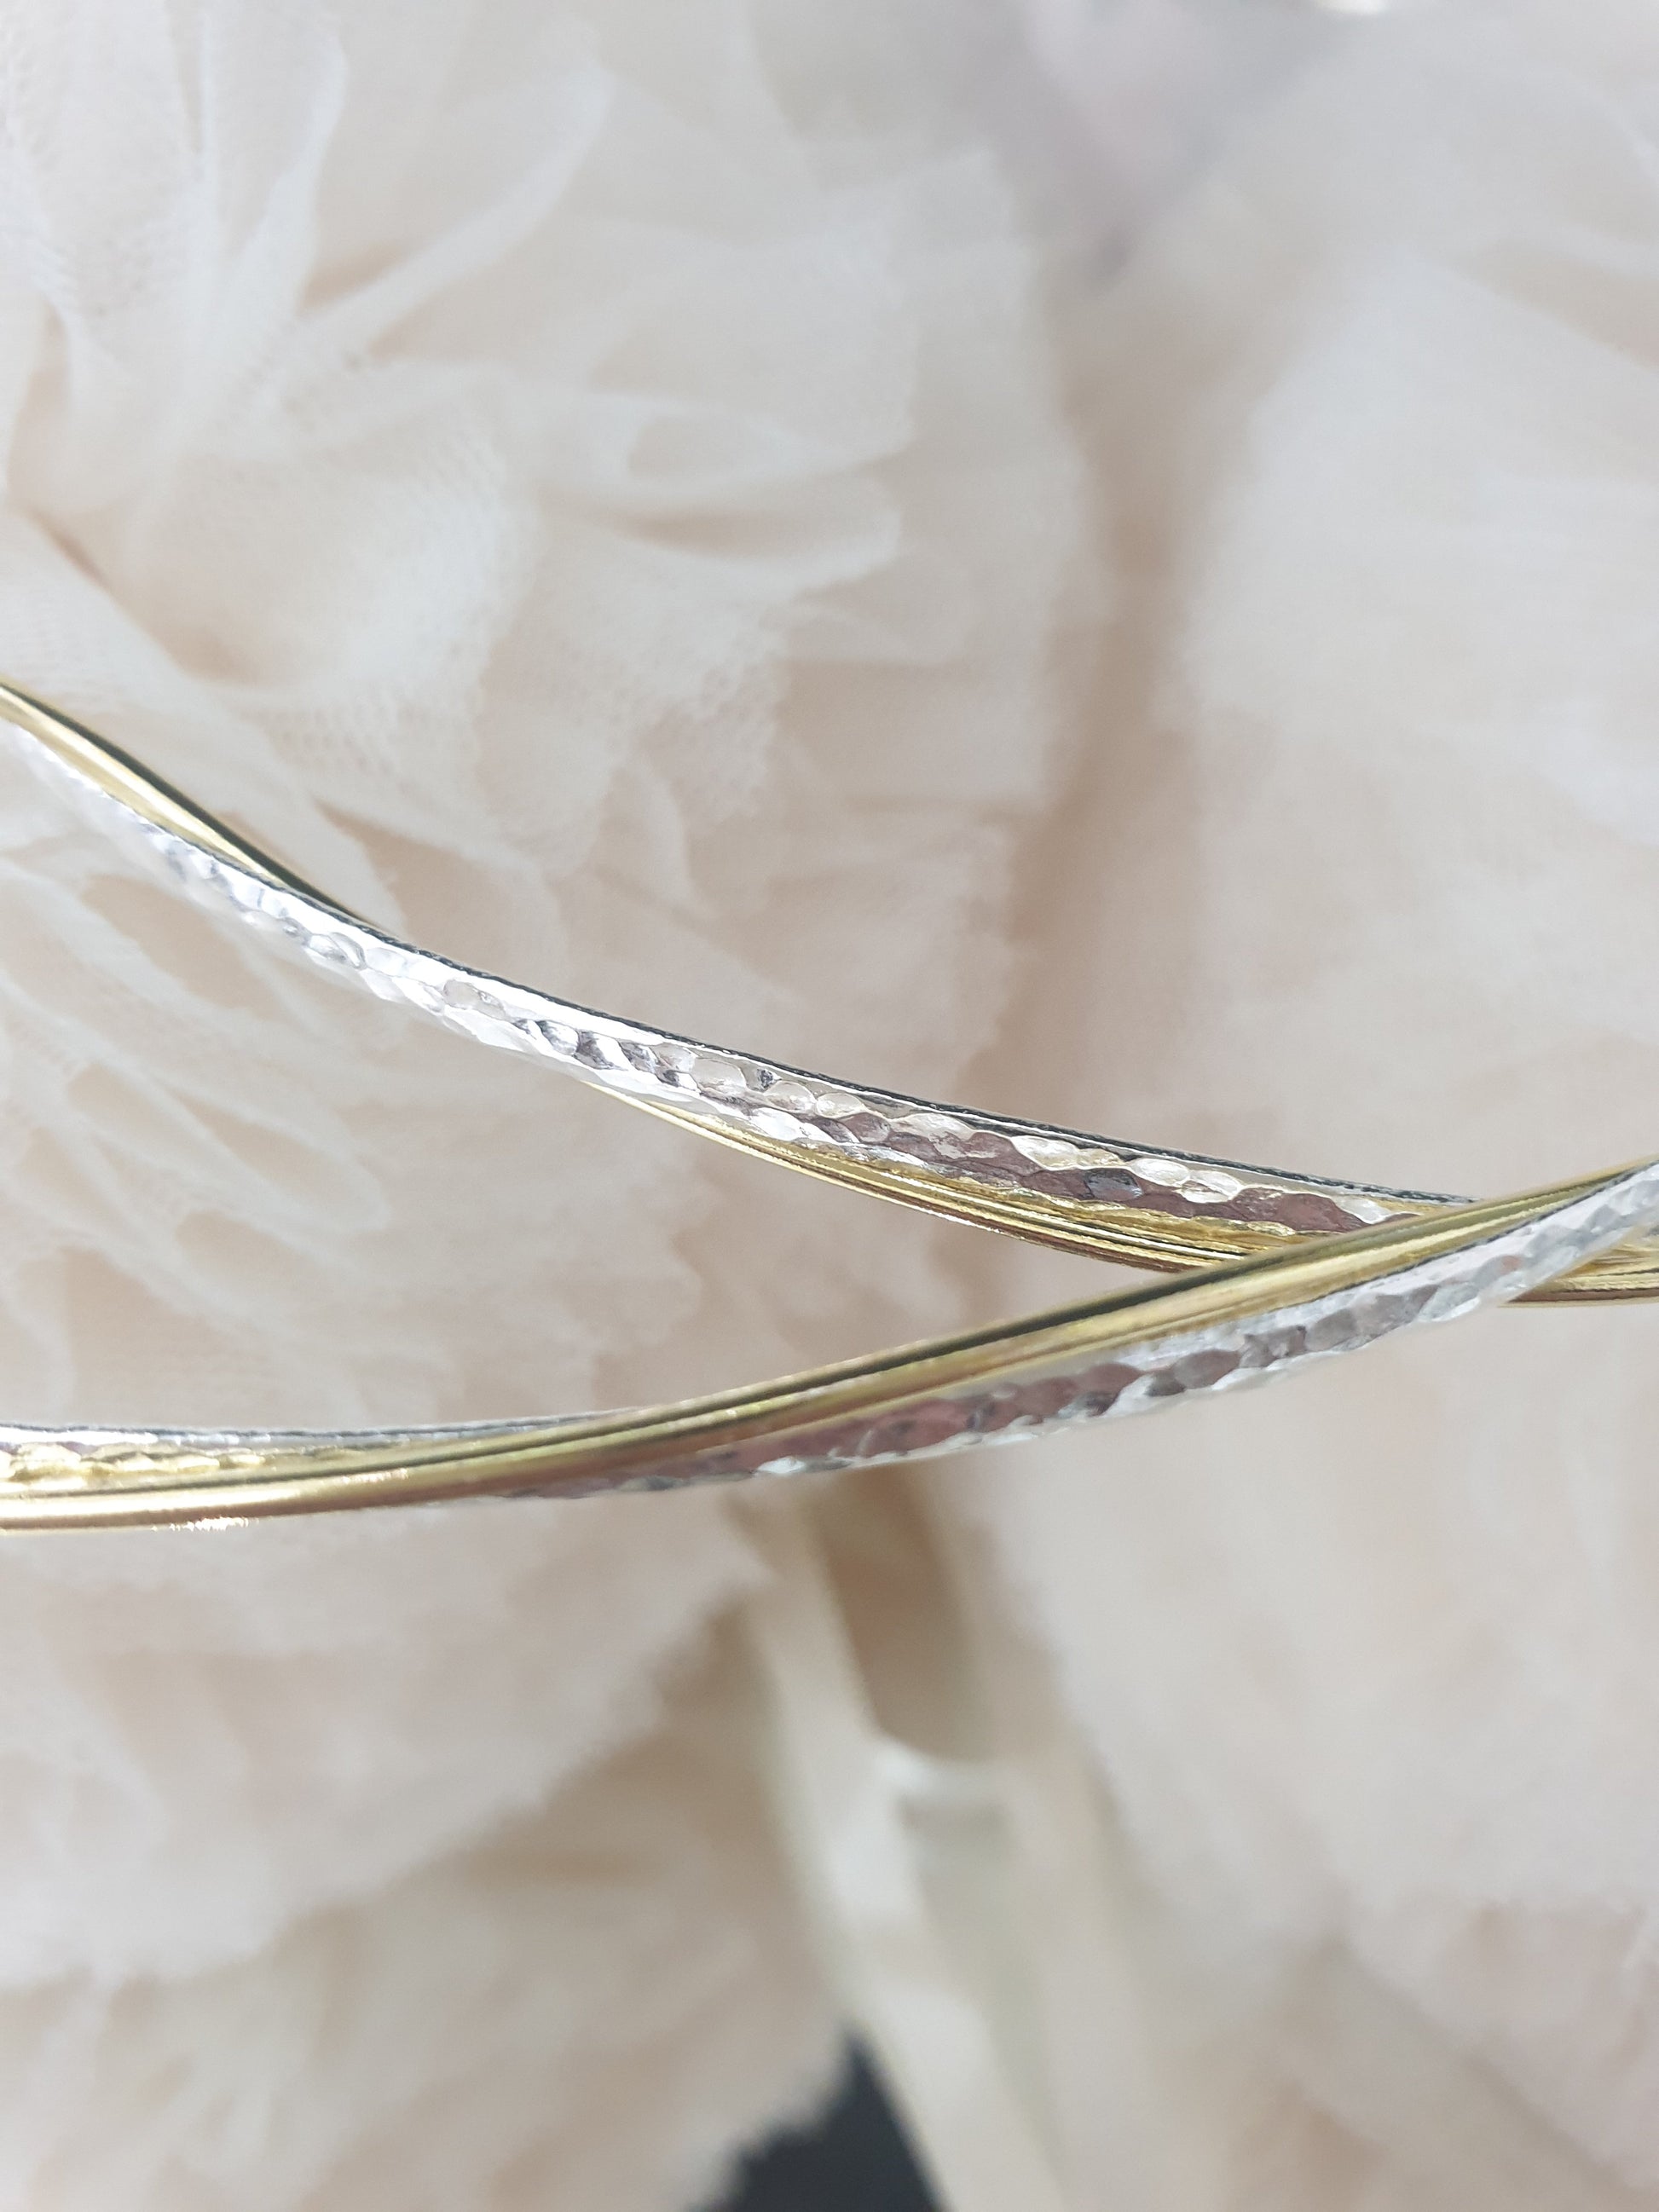 Wedding Crowns (Stefana) -  Silver Hammered with Gold Wire Twist | Pandora Designs Melbourne